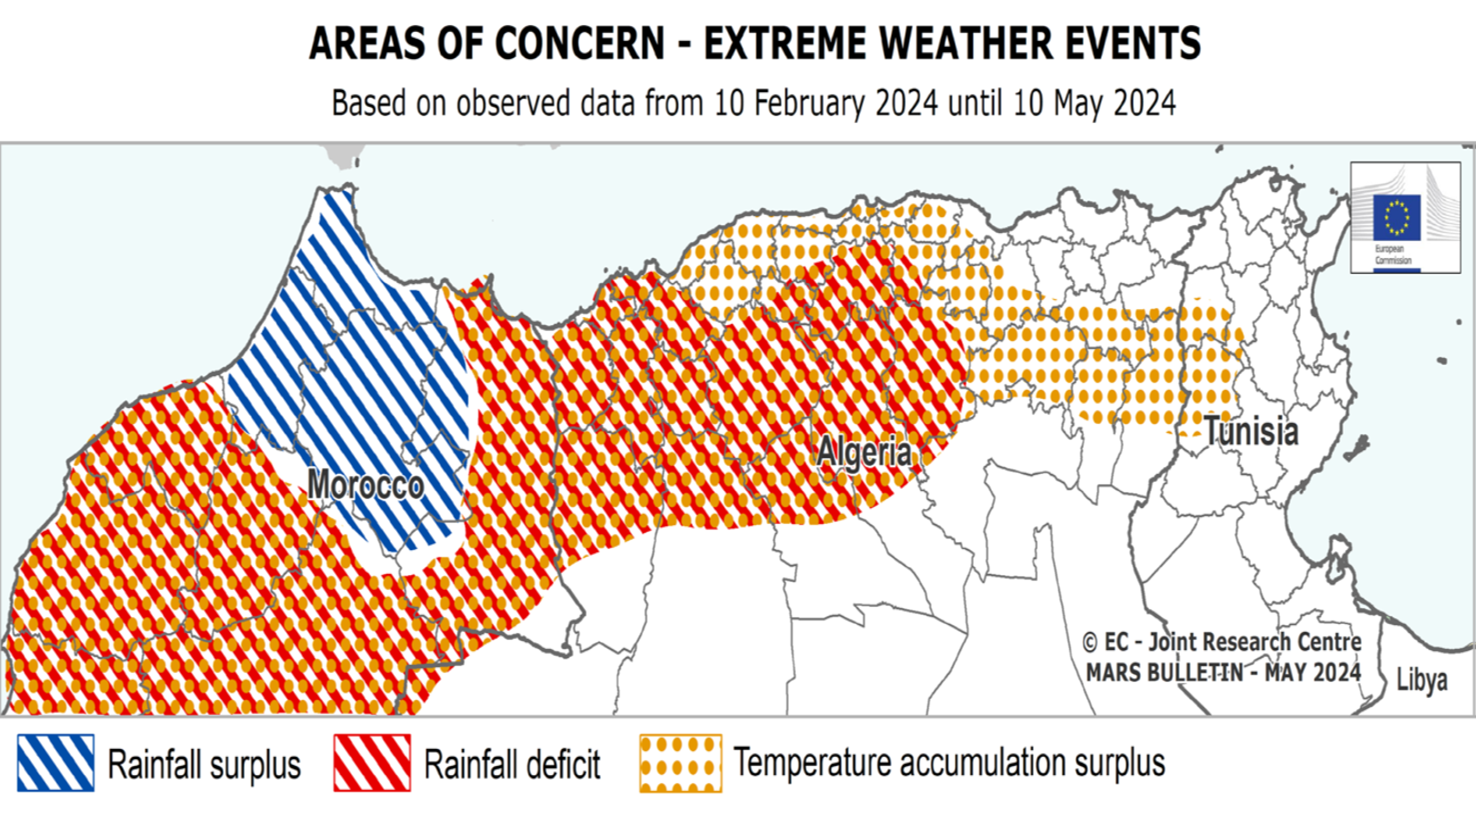 Karte der extremen Wetterereignisse in Nordafrika mit Fokus auf Trockenheit und deren Auswirkungen auf die GetreideproduktionTrockenheit Nordafrika Getreideproduktion MARS-Bulletin Wetterereignisse